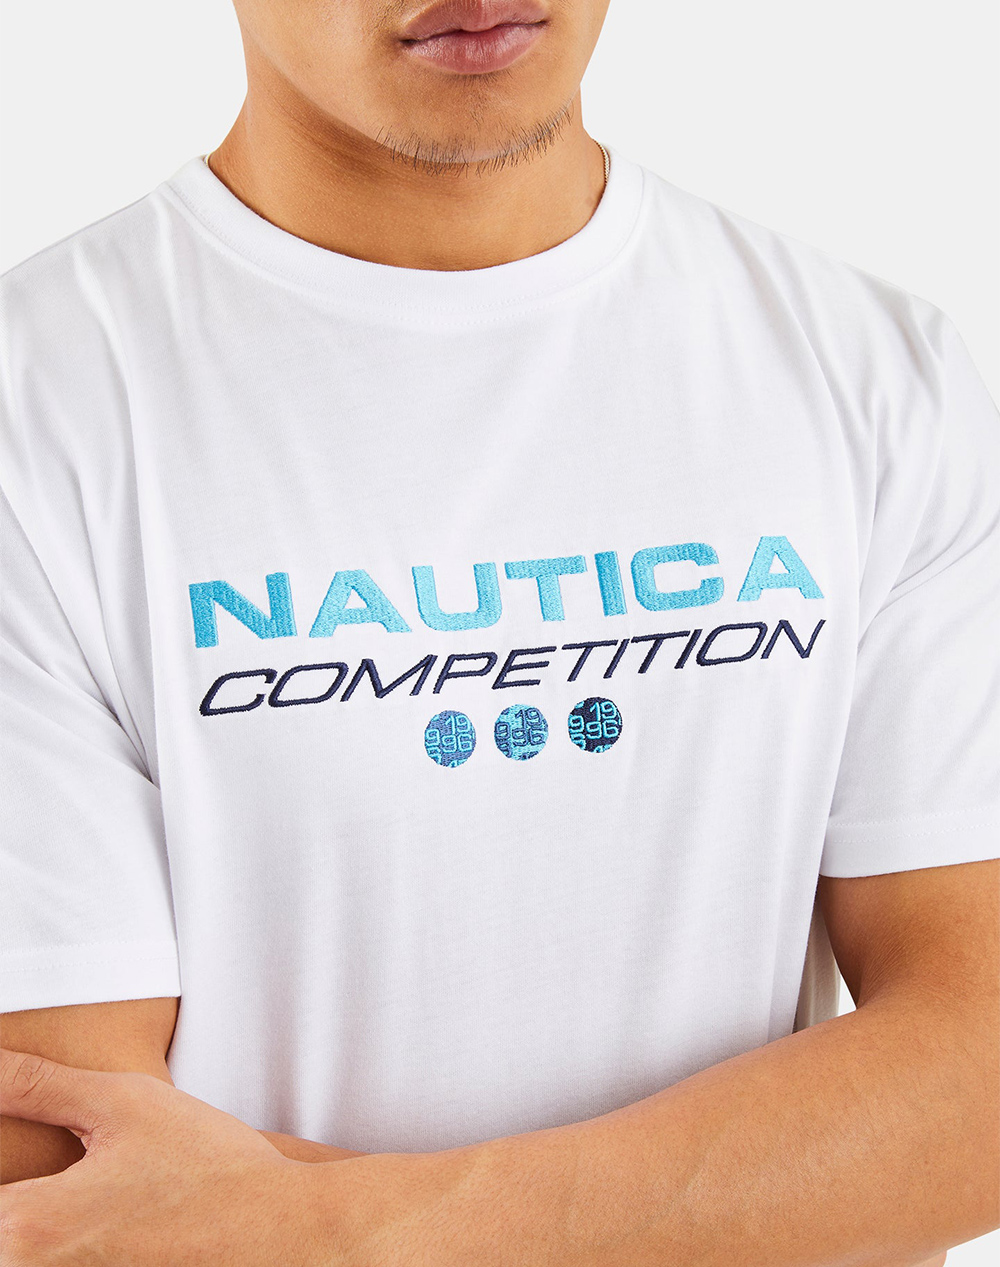 NAUTICA T-SHIRT SS Dane T-Shirt